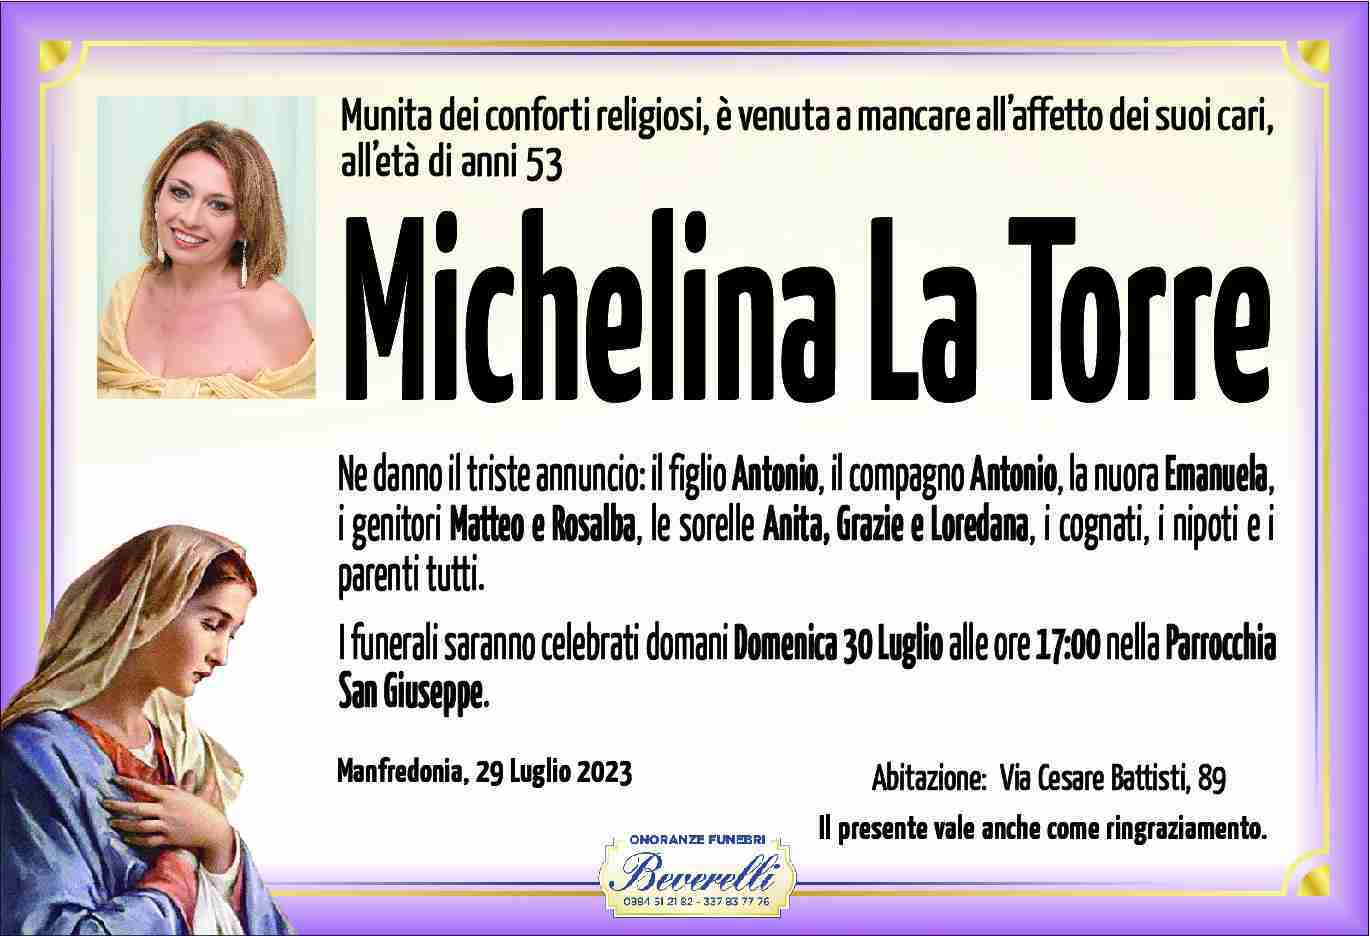 Michelina La Torre